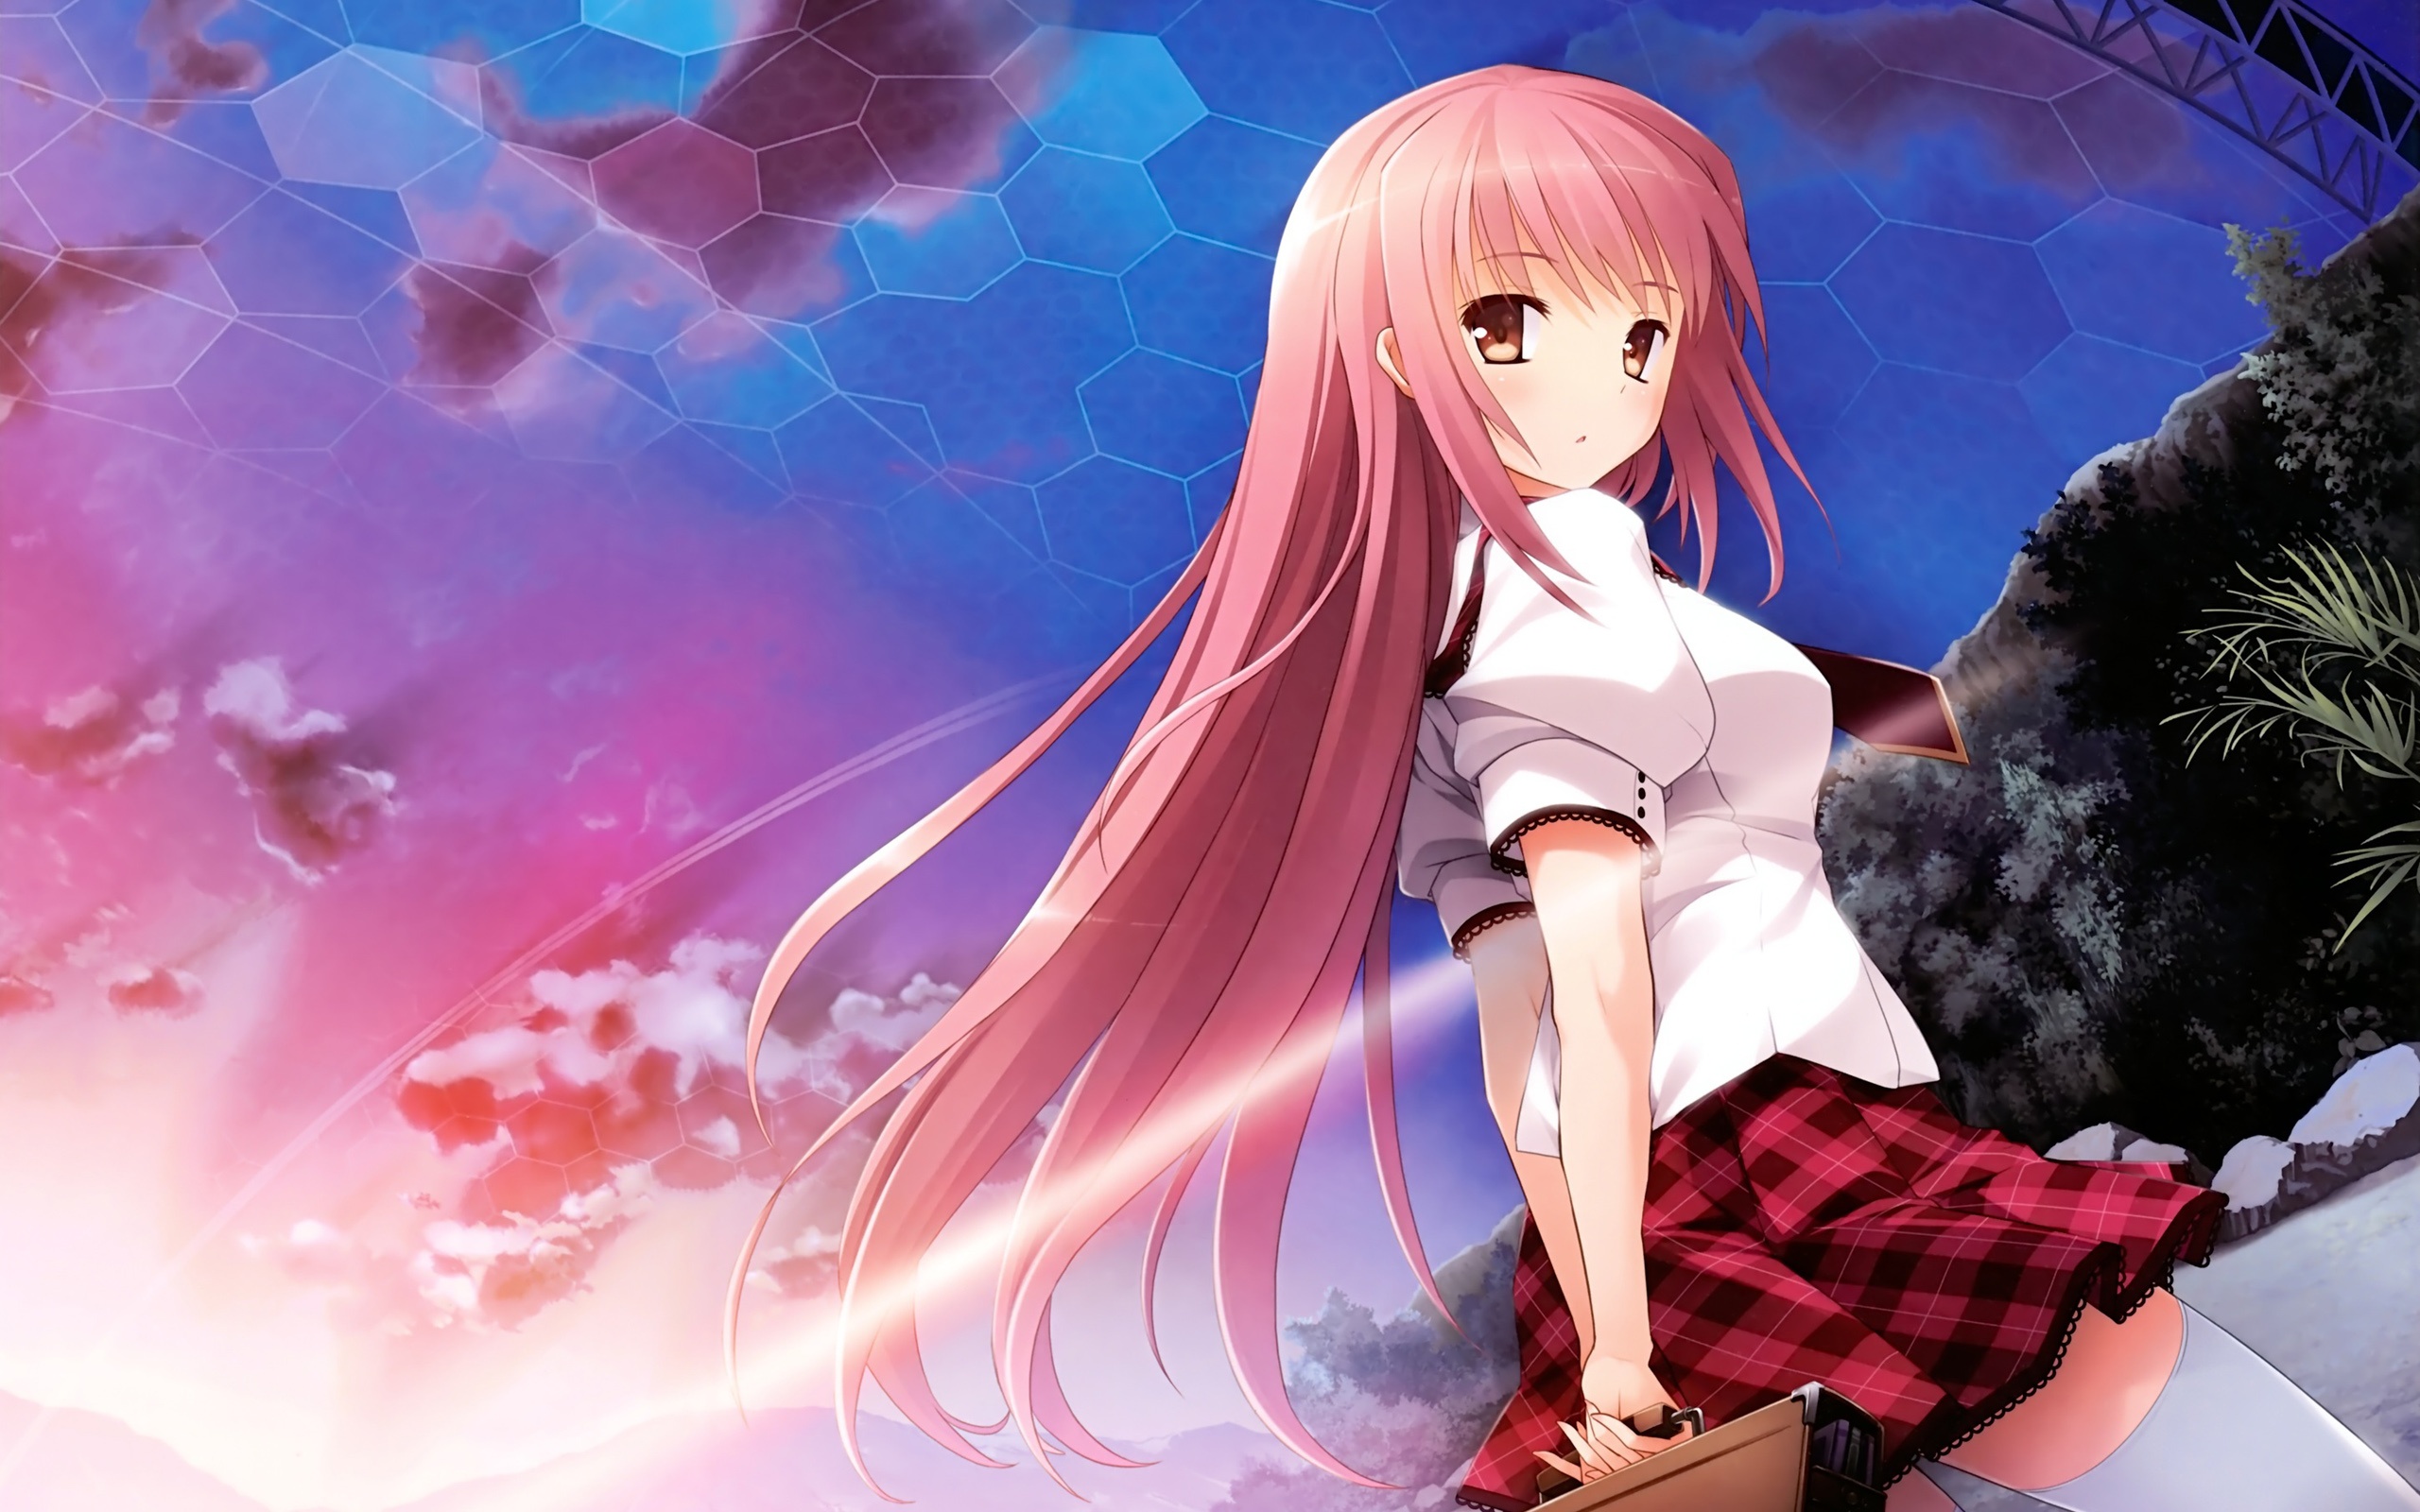 Anime Girl Wallpaper Hd Free Download gambar ke 16